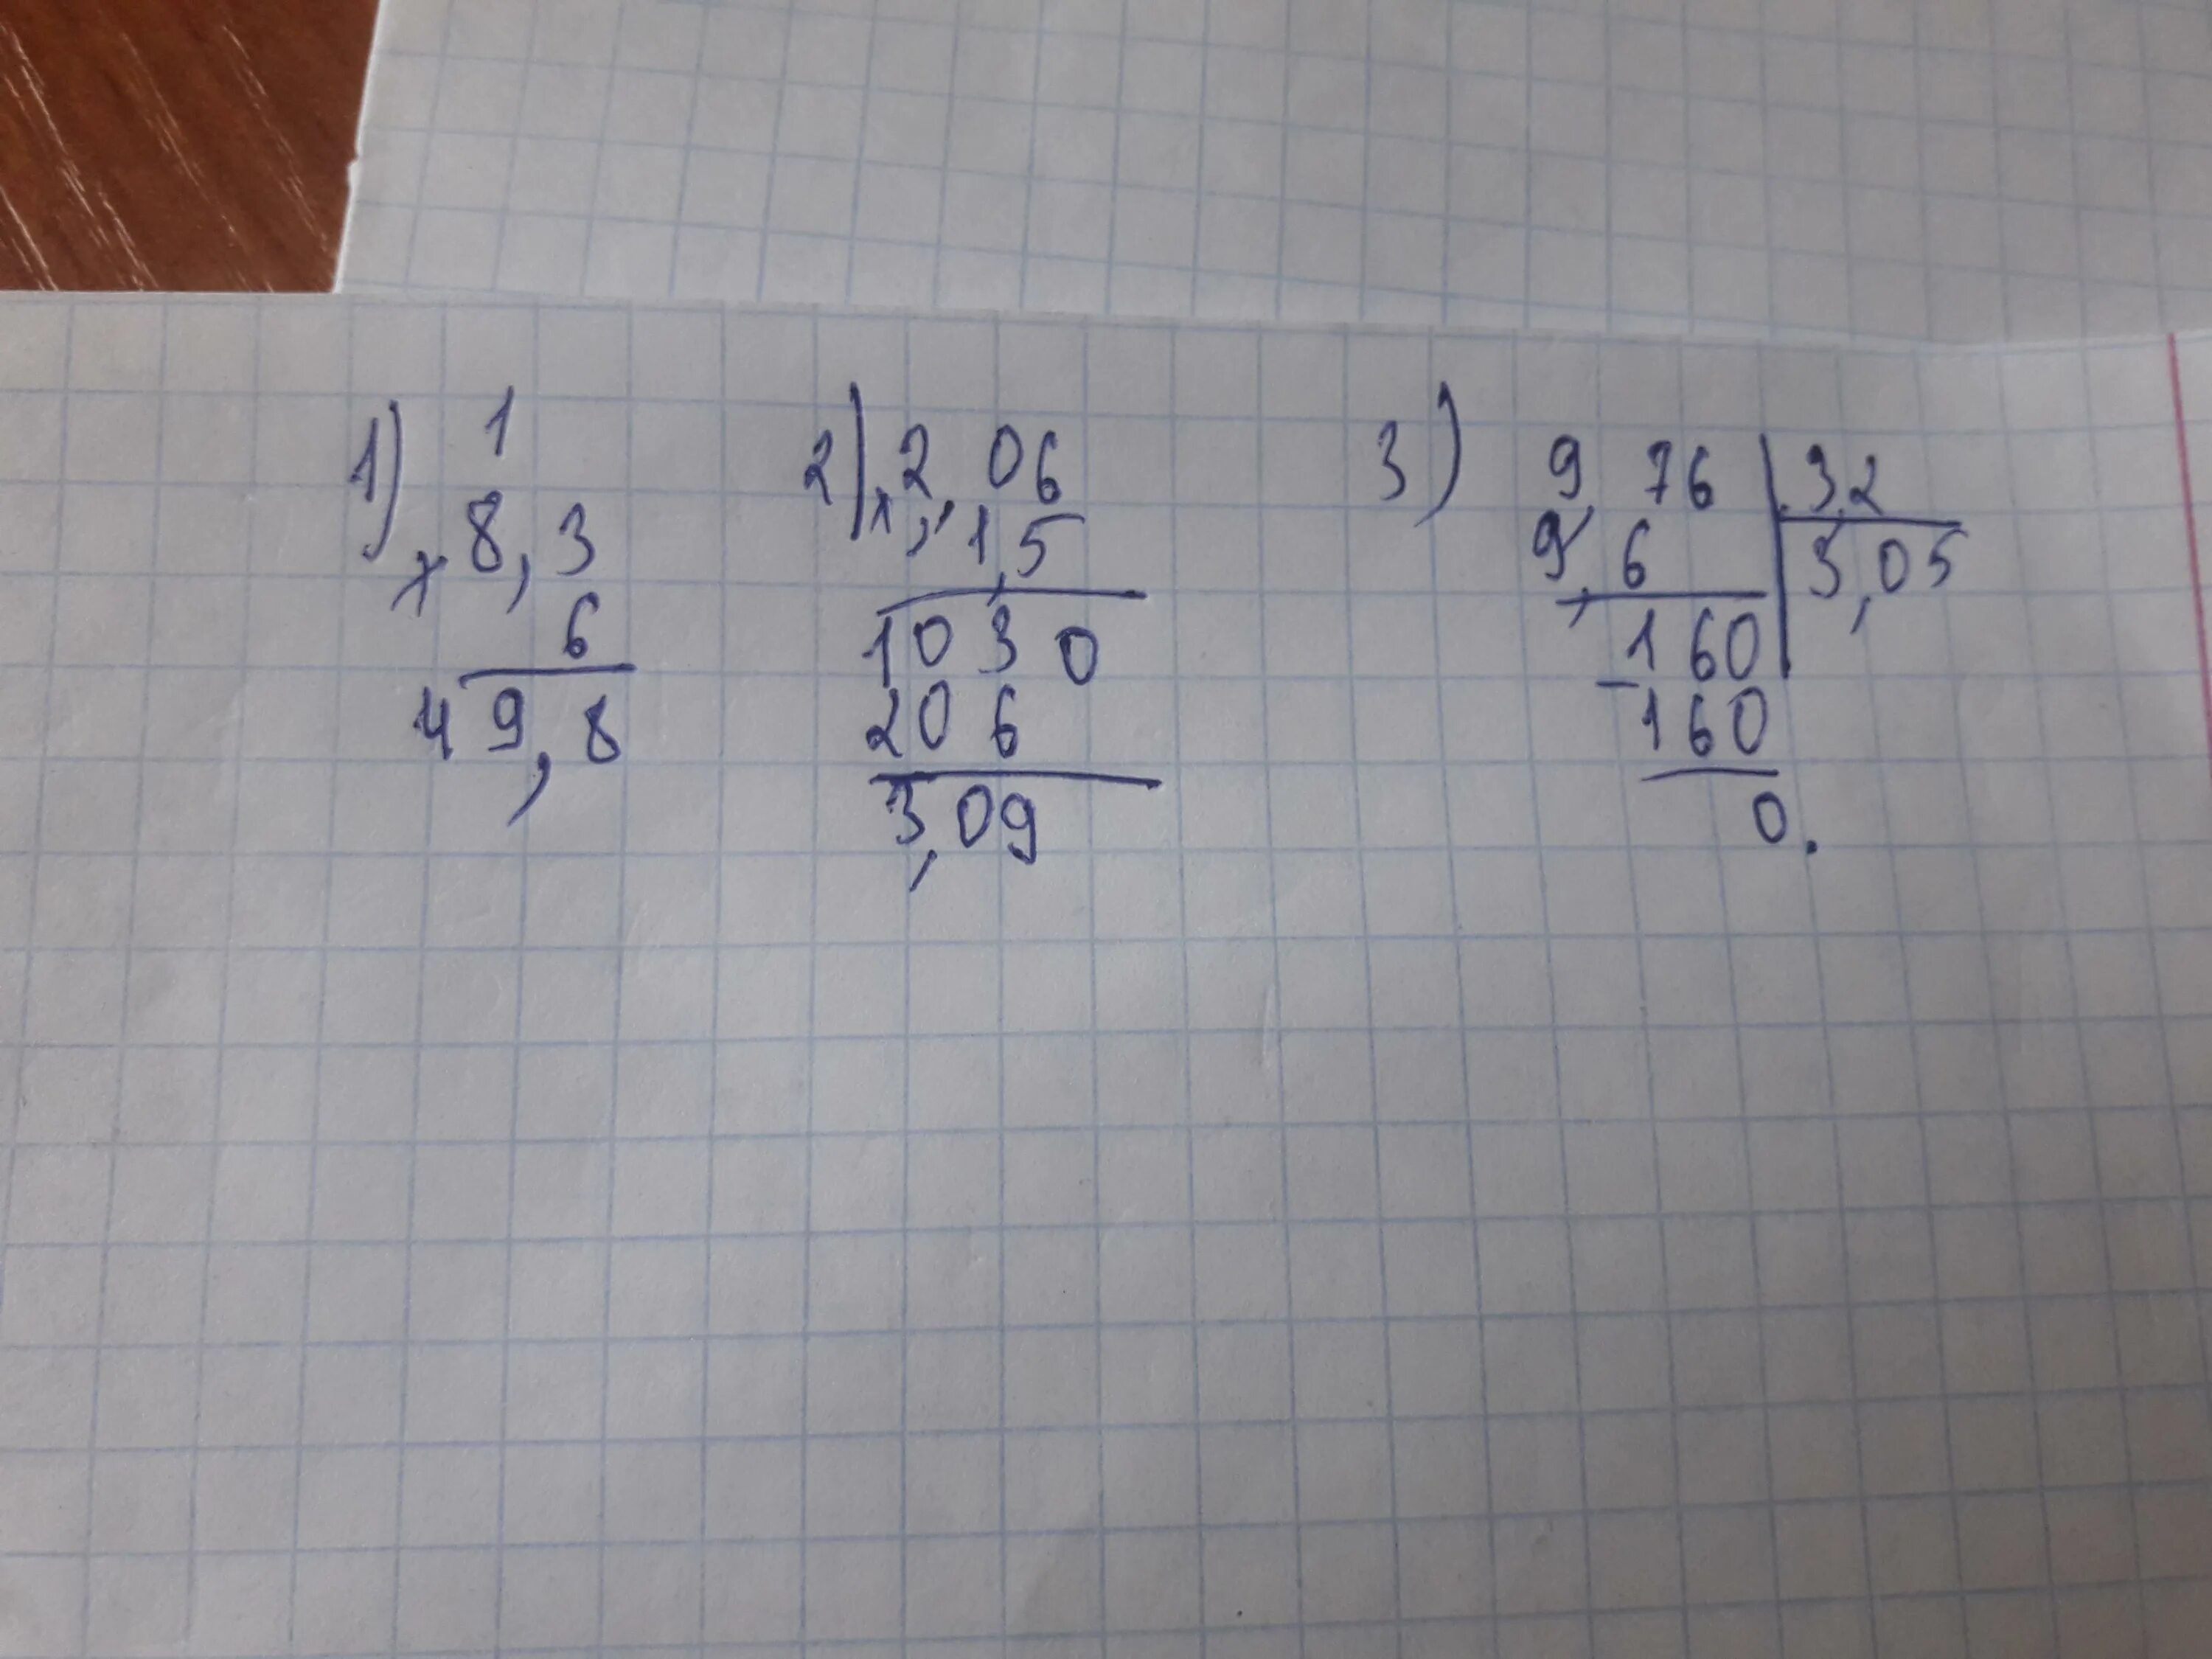 5 вторых разделить на 3. 2/3 Умножить на 2. 2 1/3 Умножить на 2. 1/2 Умножить на 1/2. 76 Разделить на 3.